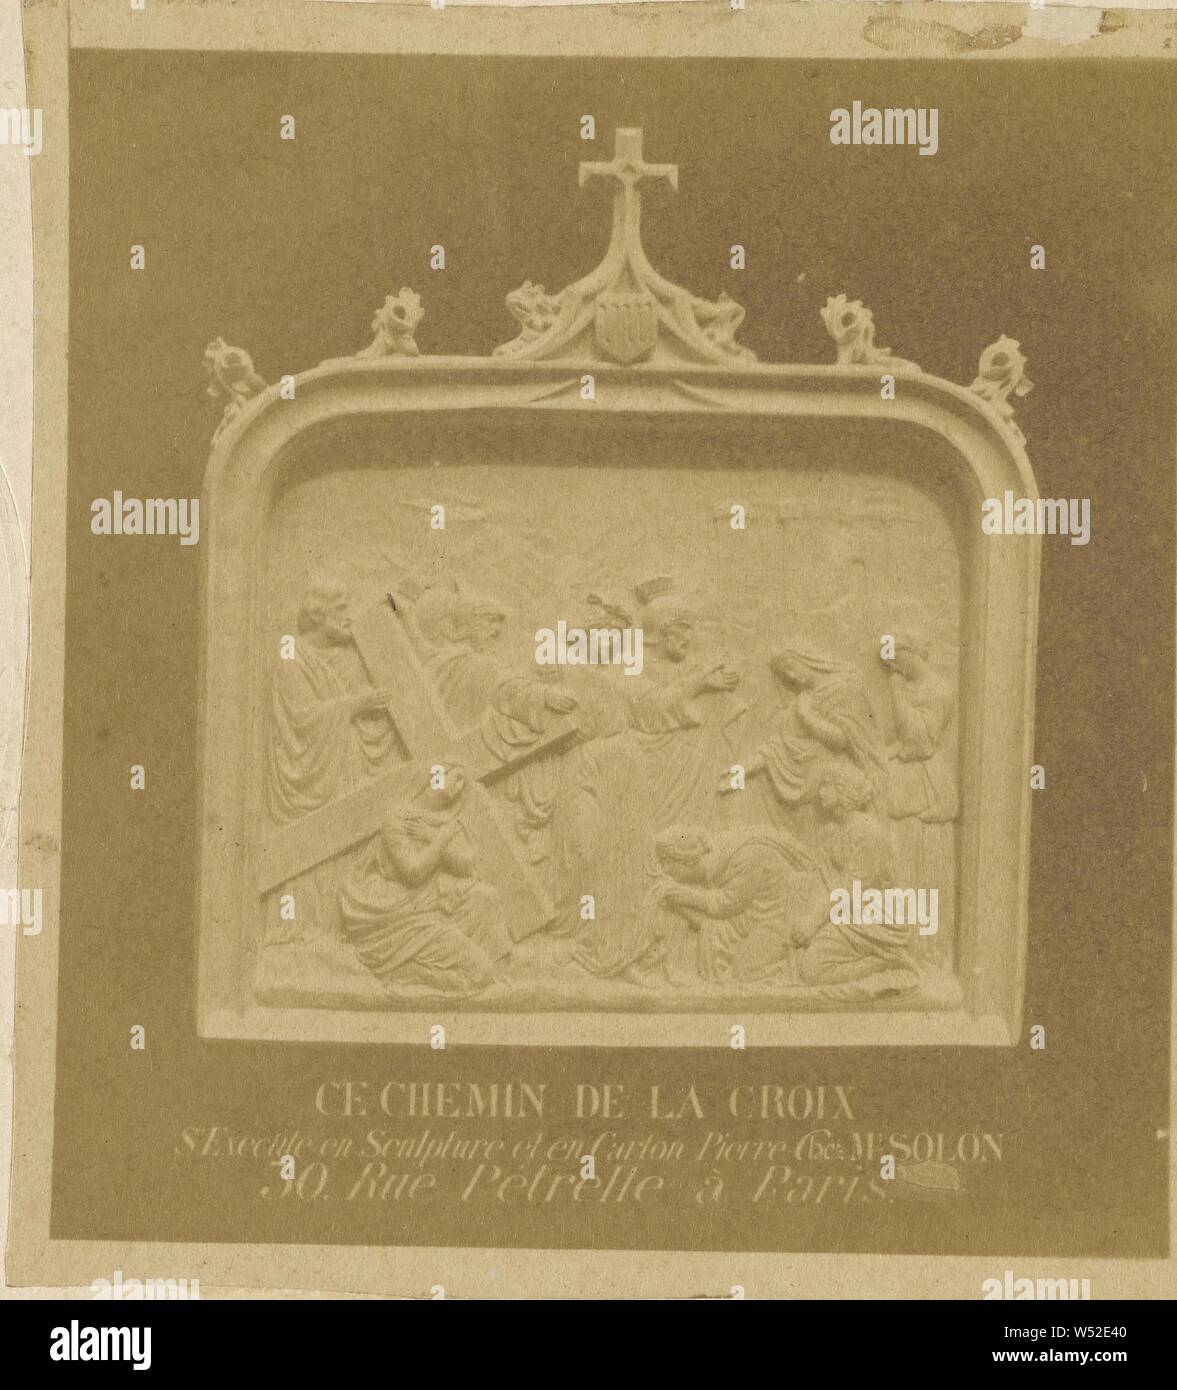 Skulptur Der achte Station des Kreuzes von Solon, unbekannte Teekocher, Französisch, über 1865, Eiweiß silber Drucken Stockfoto